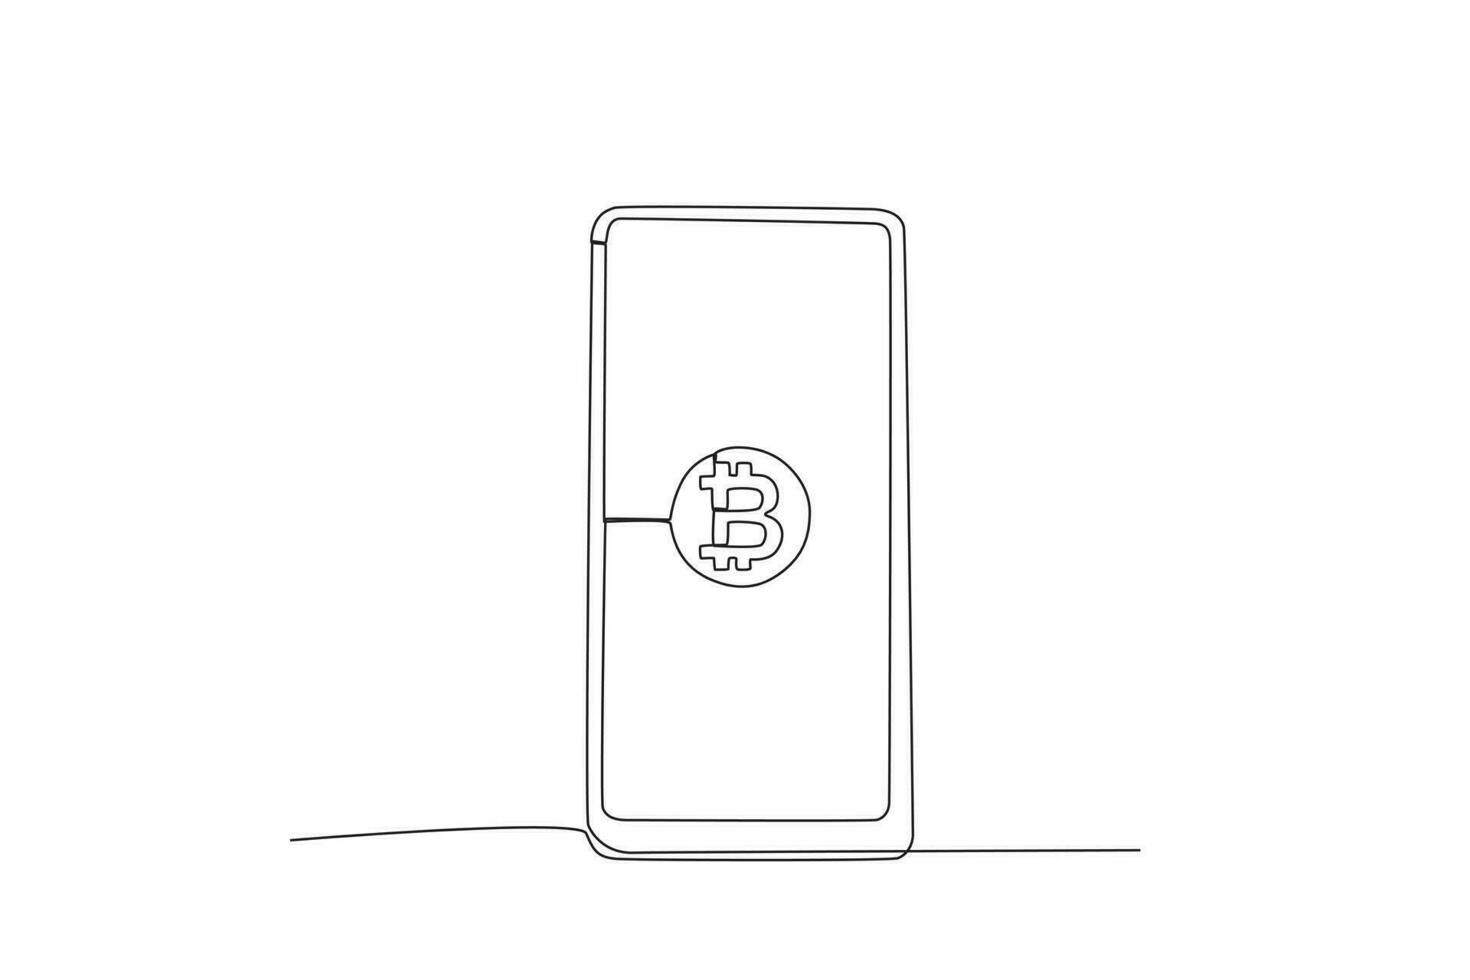 A Bitcoin on the phone vector